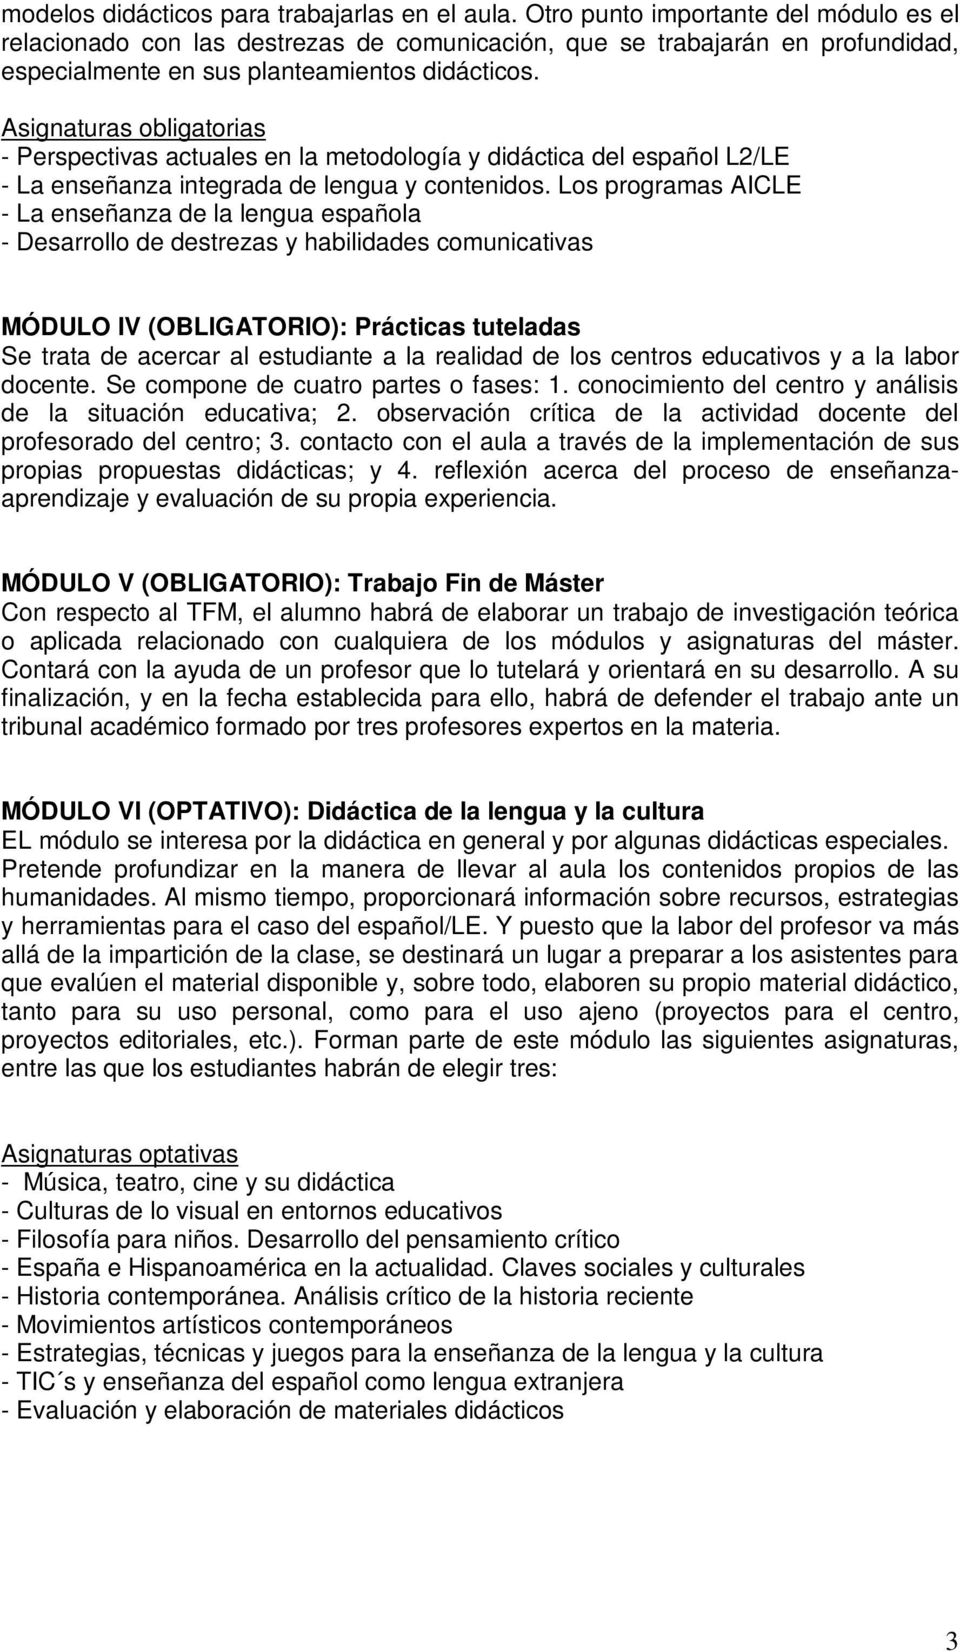 Asignaturas obligatorias - Perspectivas actuales en la metodología y didáctica del español L2/LE - La enseñanza integrada de lengua y contenidos.